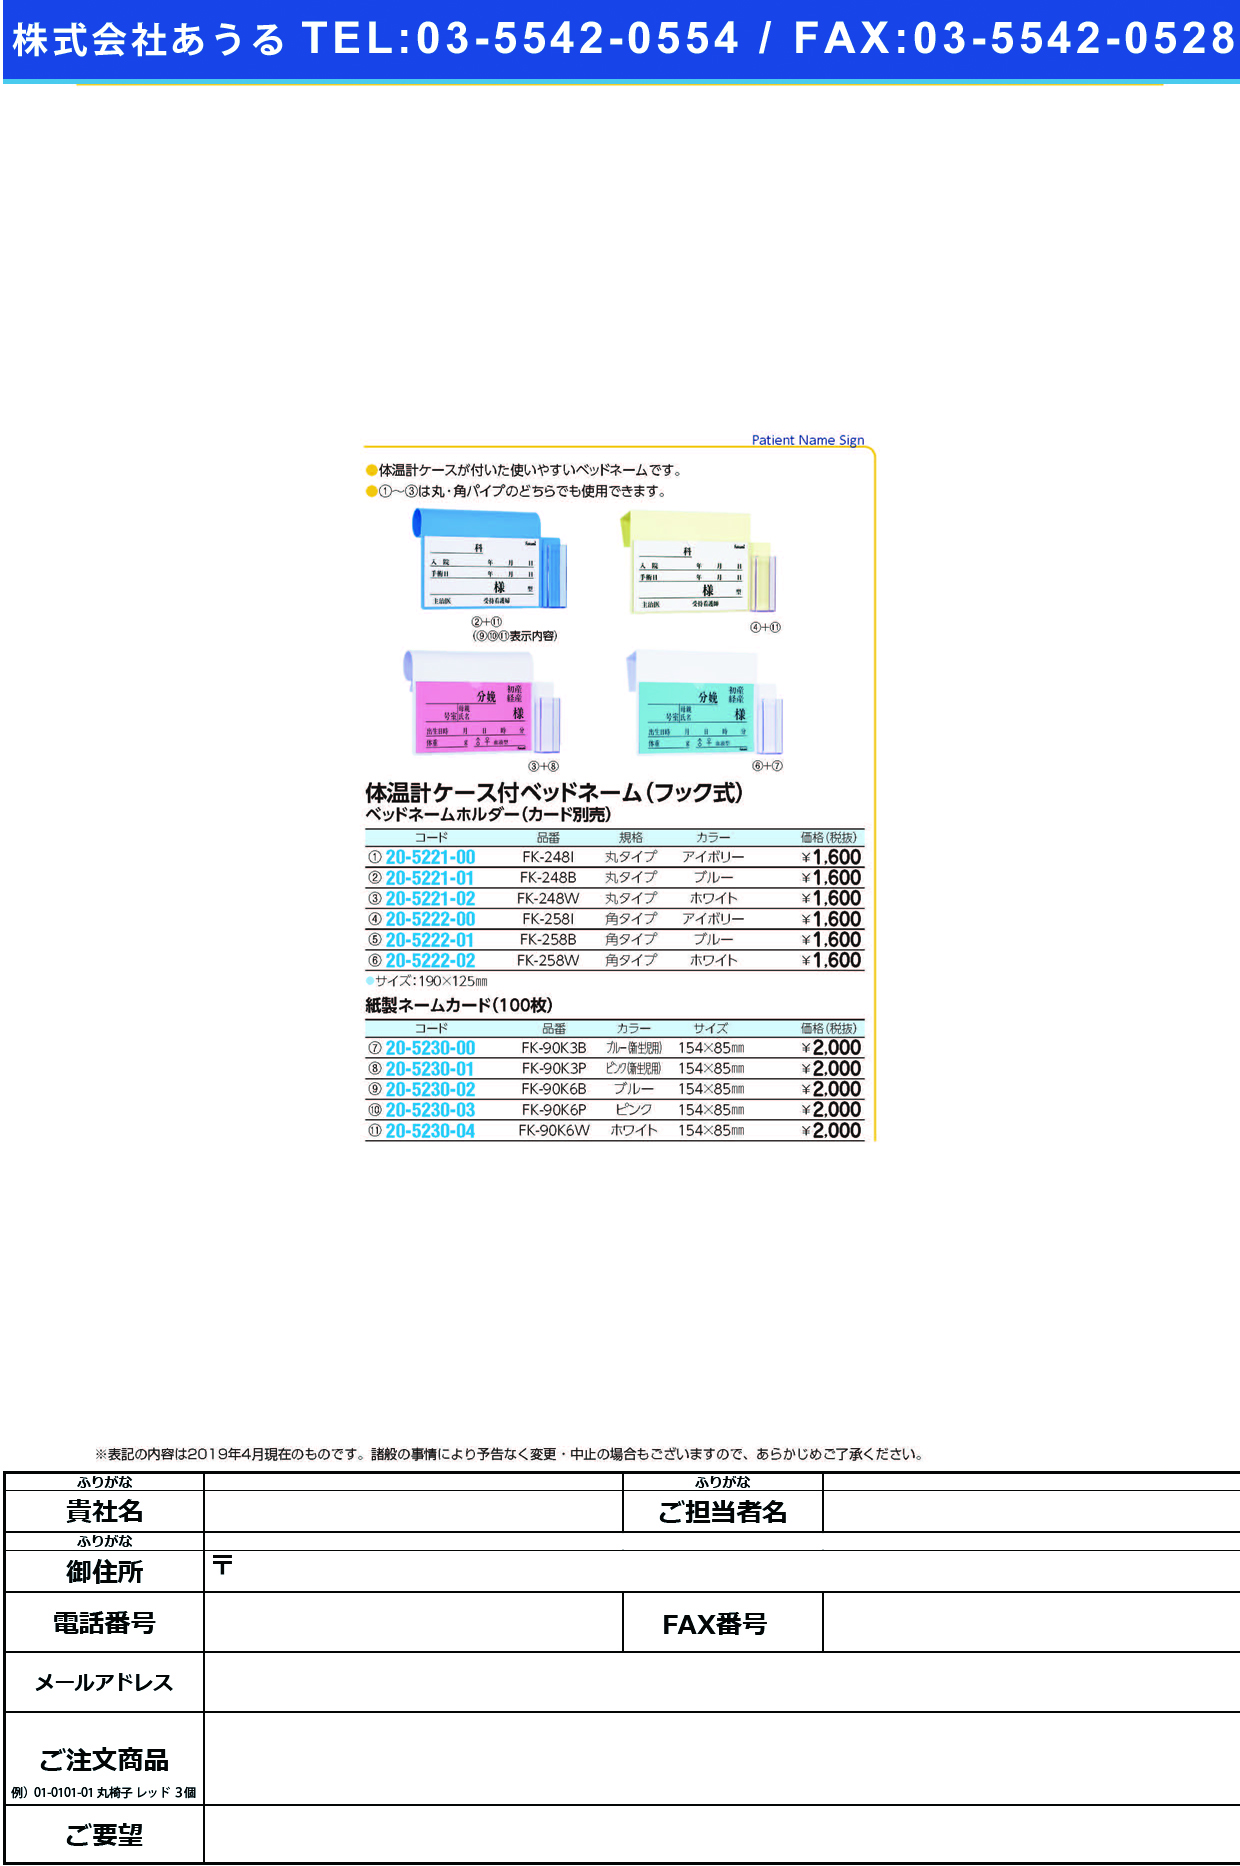 (20-5221-00)ベッドネームホルダー（体温計ケース付 FK-248I(ﾌｯｸｼｷ) ﾍﾞｯﾄﾞﾈｰﾑﾎﾙﾀﾞｰ【1個単位】【2019年カタログ商品】